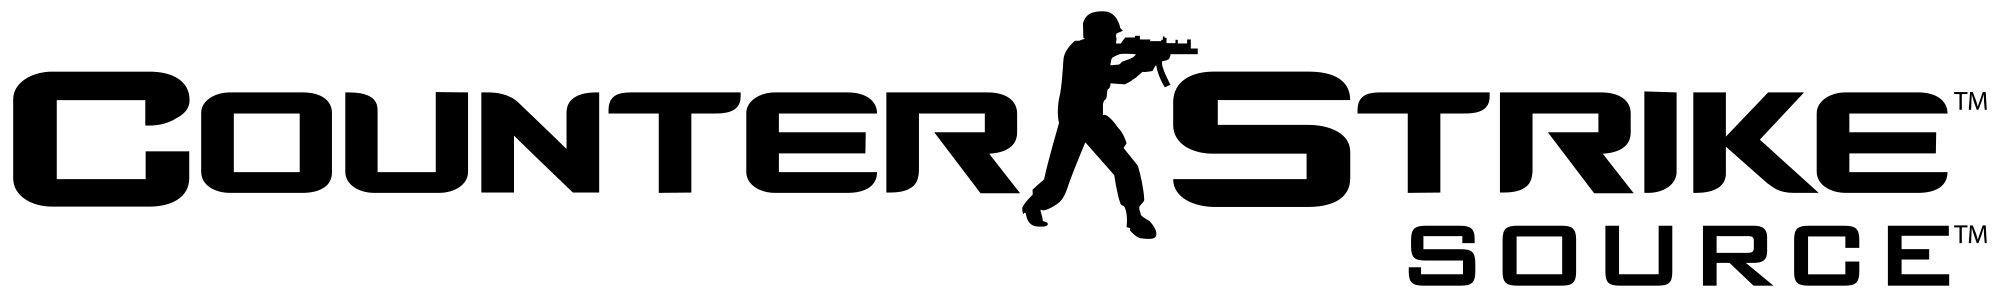 Counter Strike Logo File PNG Image